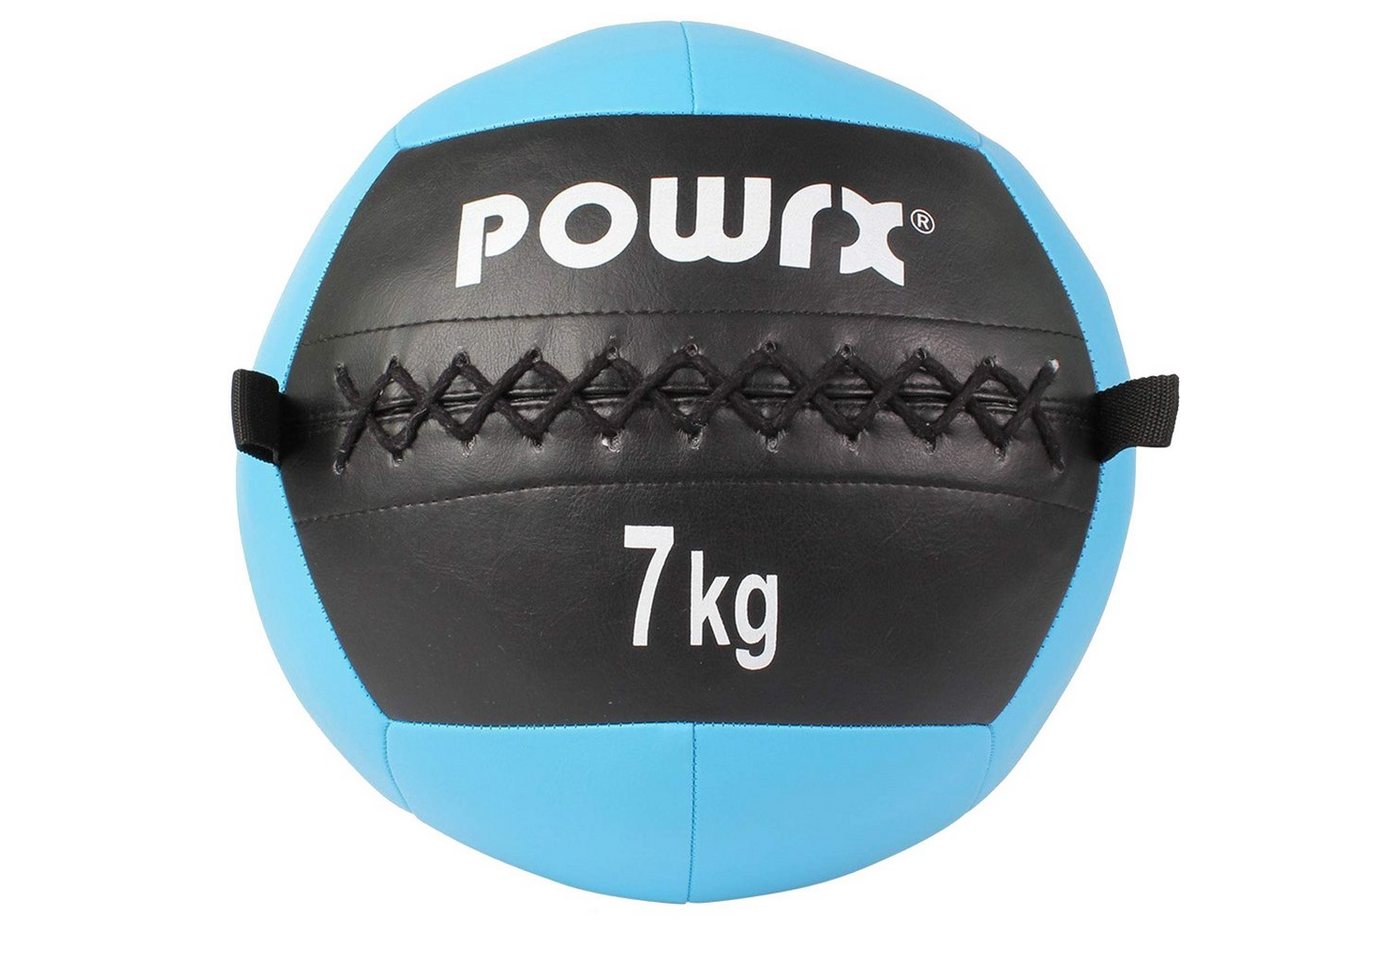 POWRX Medizinball Gewichtsball 2-10 kg, versch. Farben (7 kg/Cyan), 7 Kg / Cyan Kunstleder von POWRX